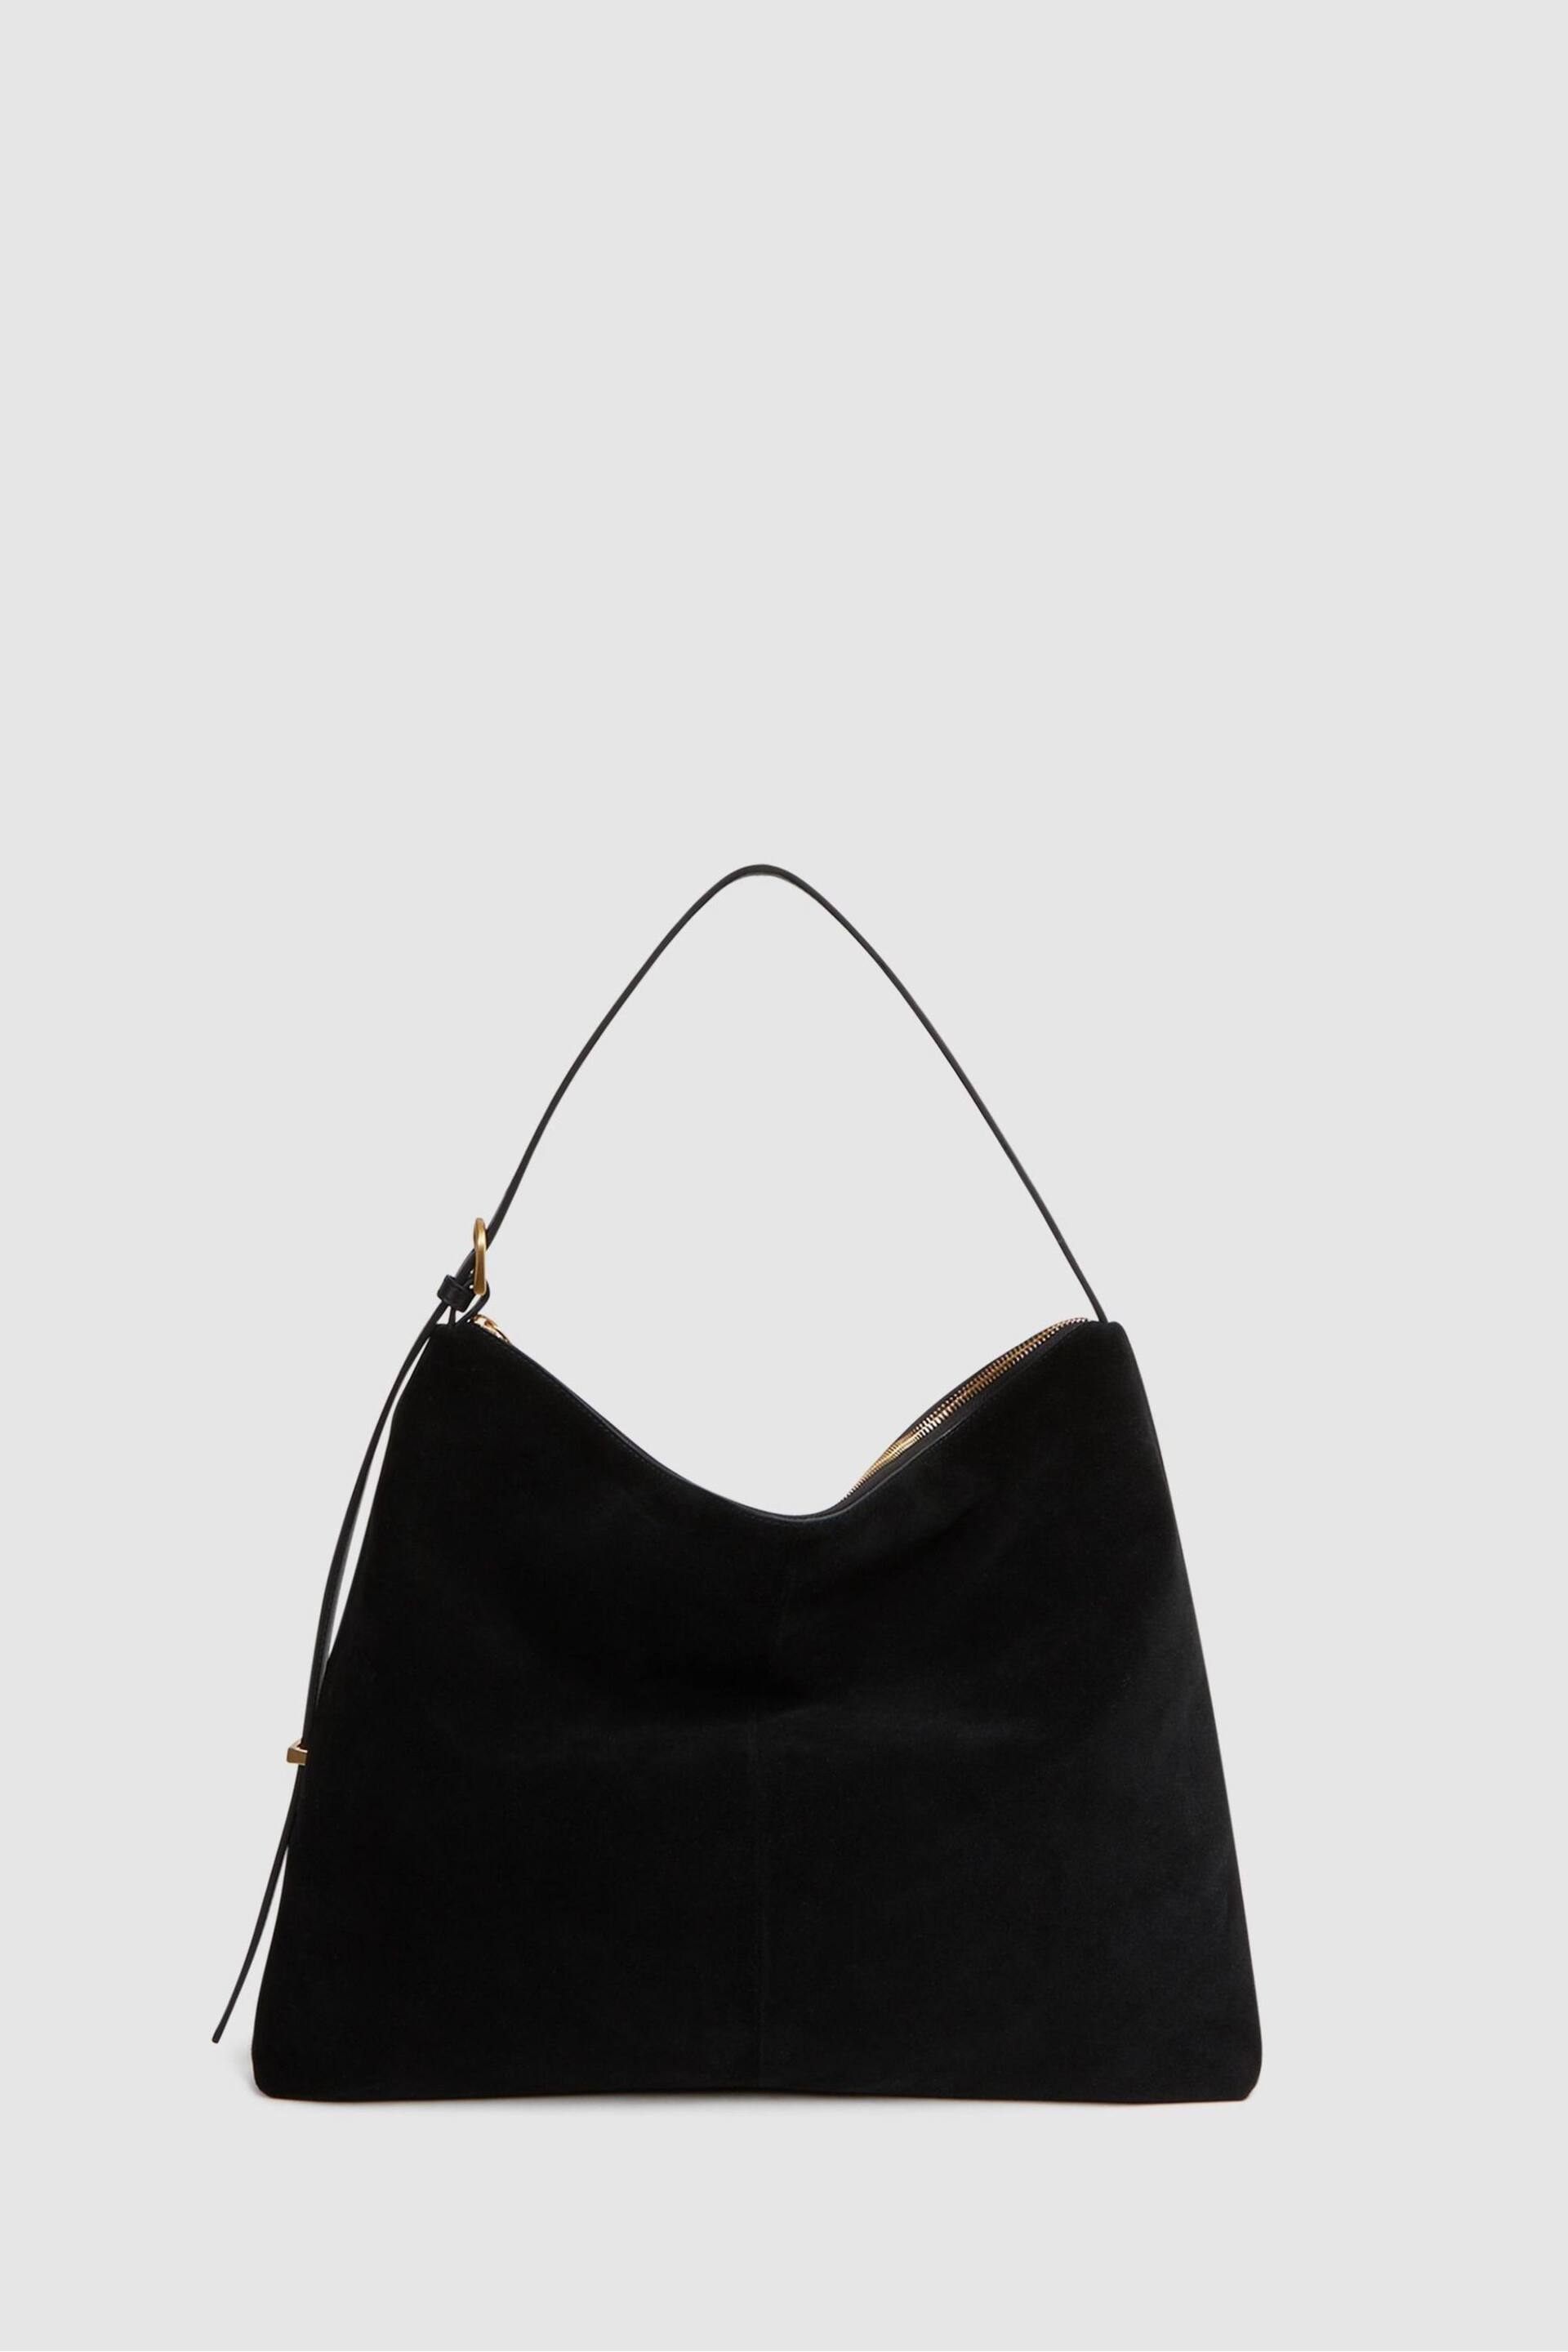 Reiss Black Vigo Leather Suede Handbag - Image 3 of 6